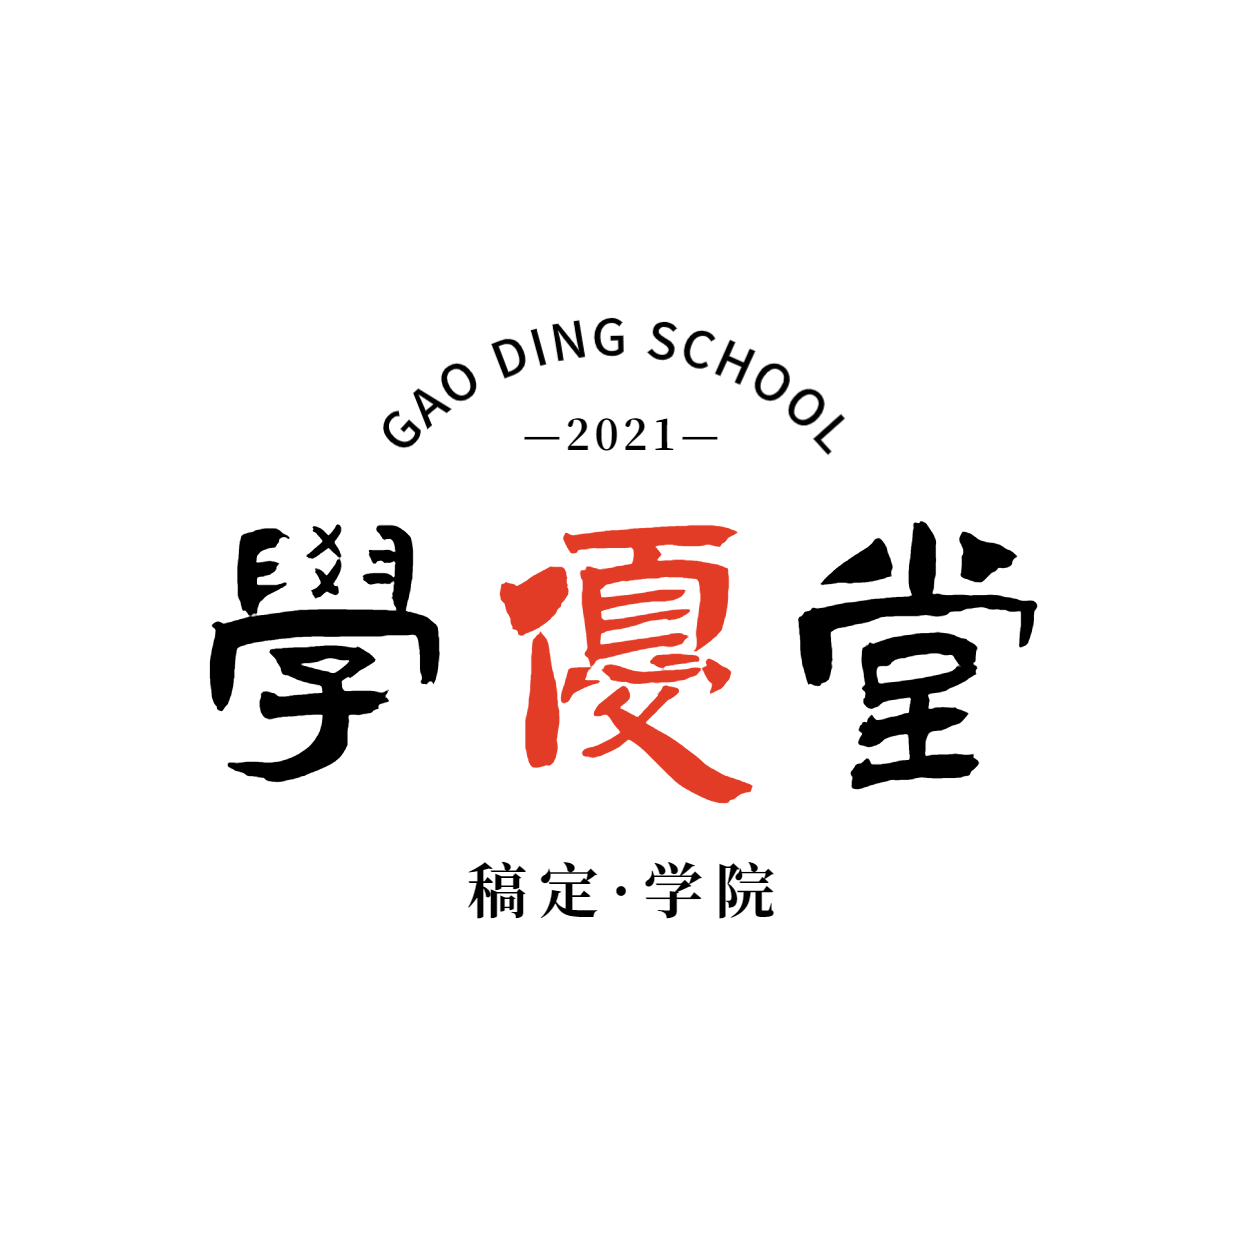 教育培训学院简约清新logo